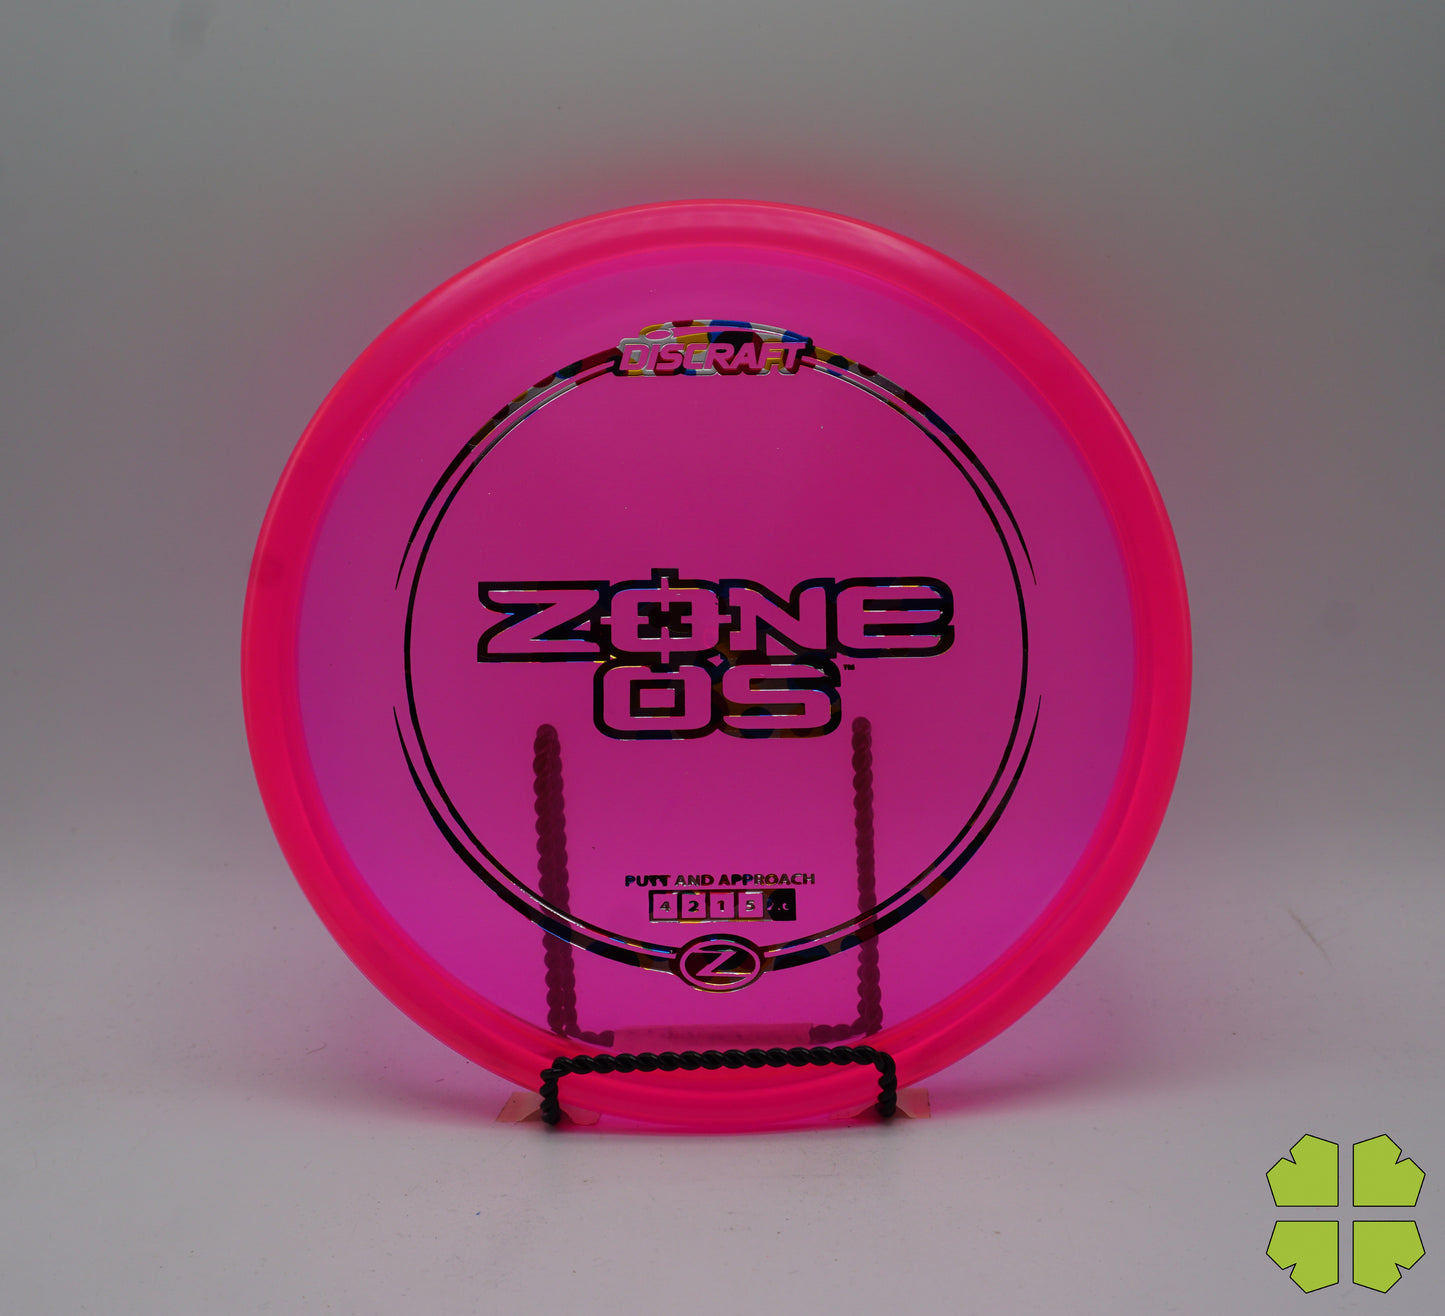 Z Line Zone OS